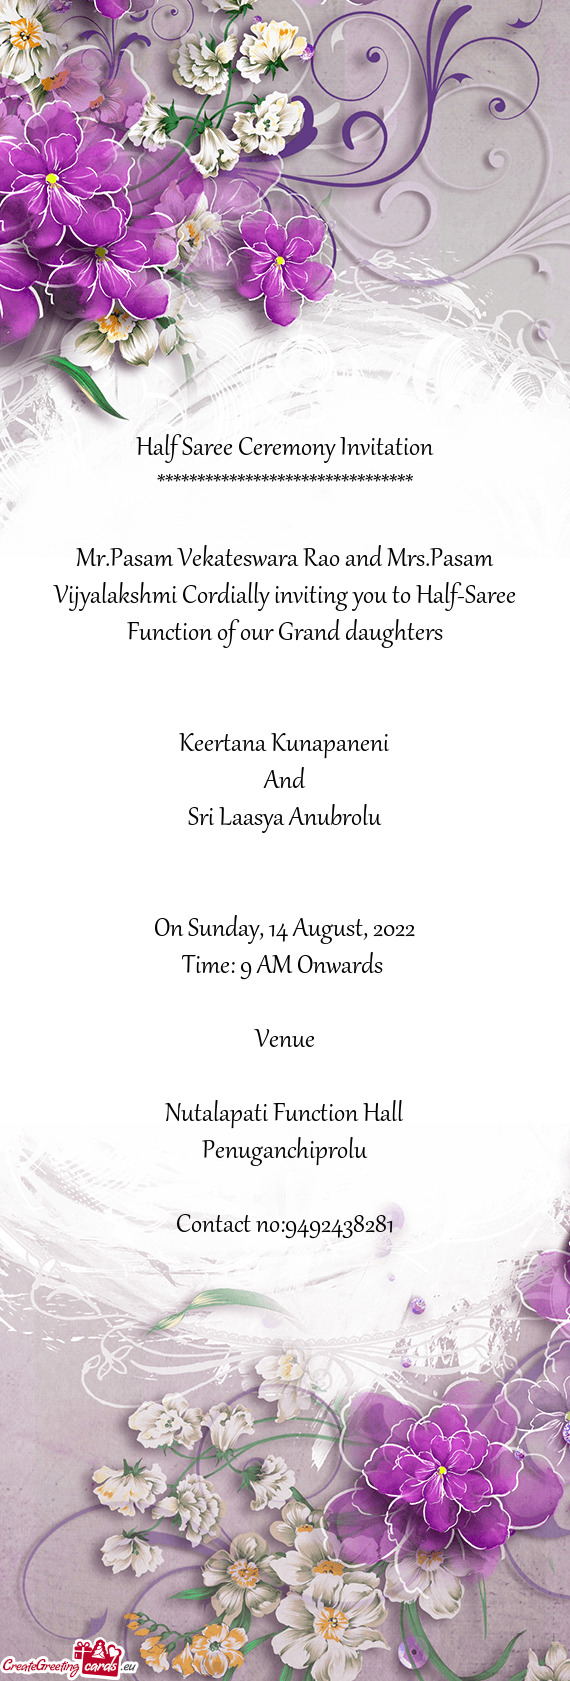 Mr.Pasam Vekateswara Rao and Mrs.Pasam Vijyalakshmi Cordially inviting you to Half-Saree Function of